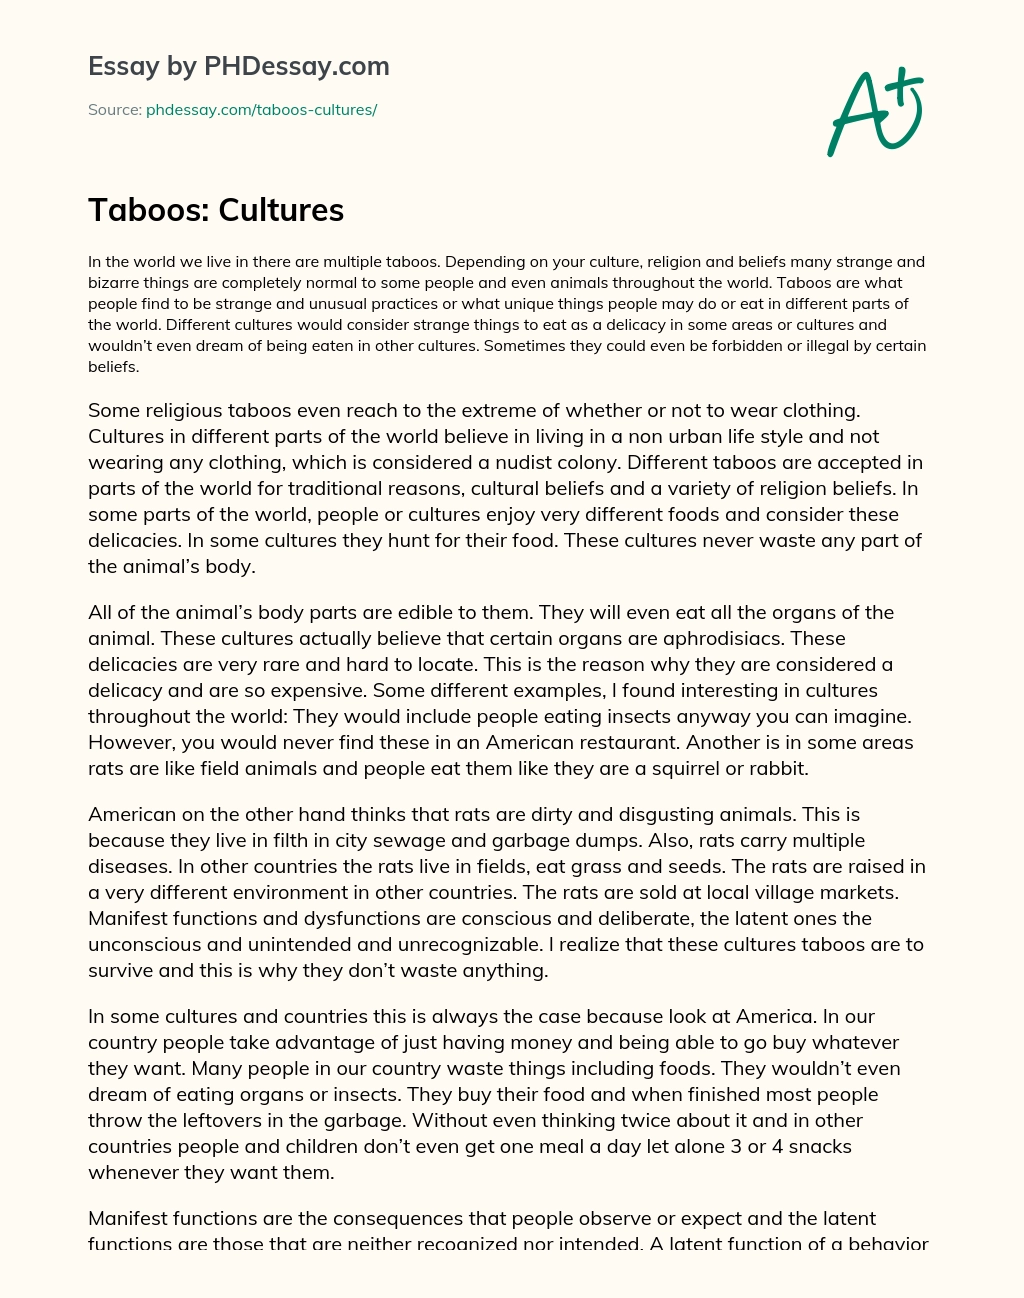 Taboos: Cultures essay